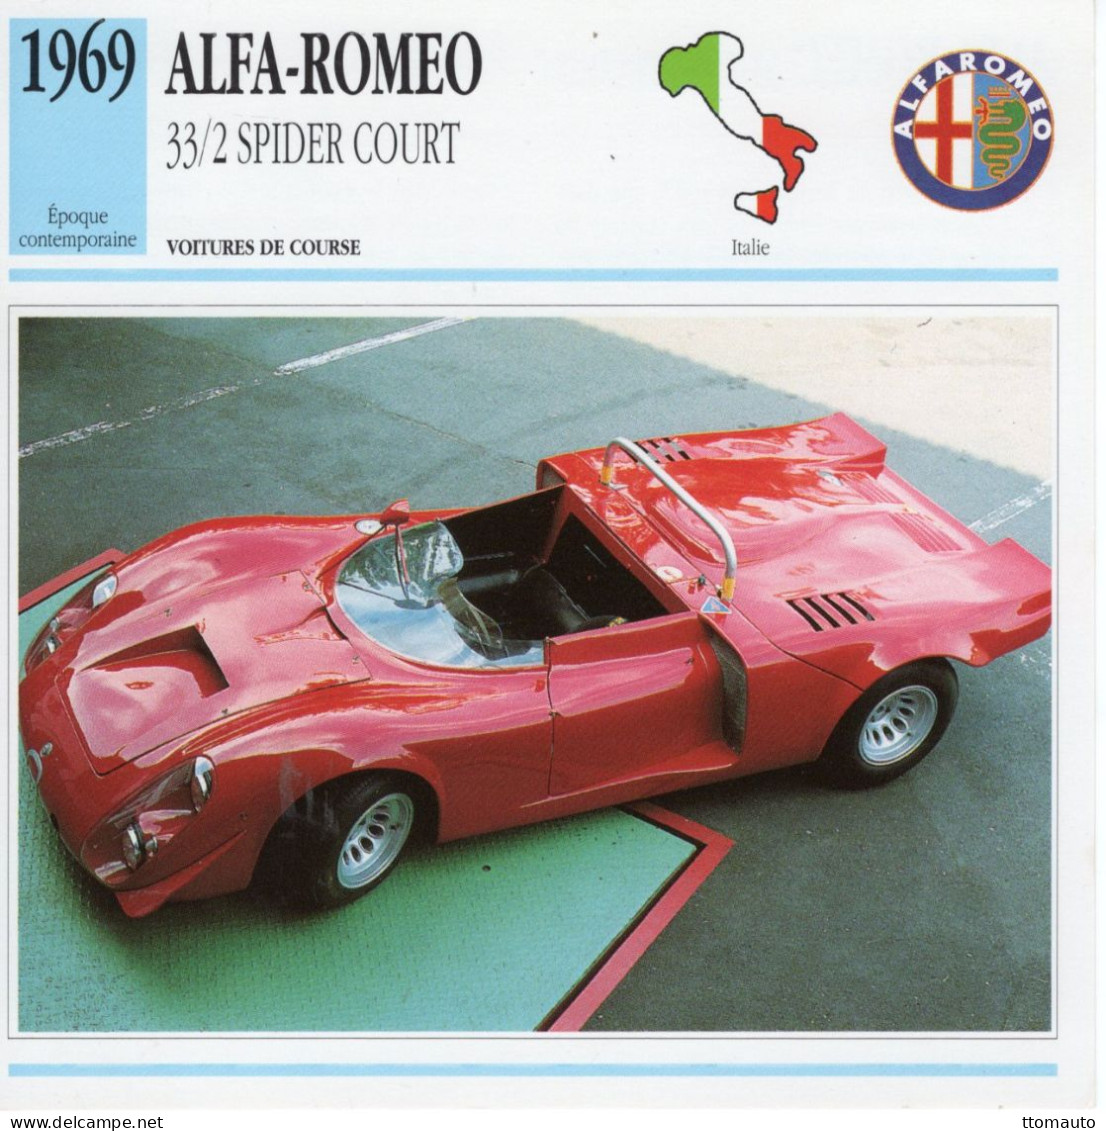 Fiche  -  Voiture De Course -  Alfa Romeo 33/2 Spider Court (1969)   -  Carte De Collection - Voitures